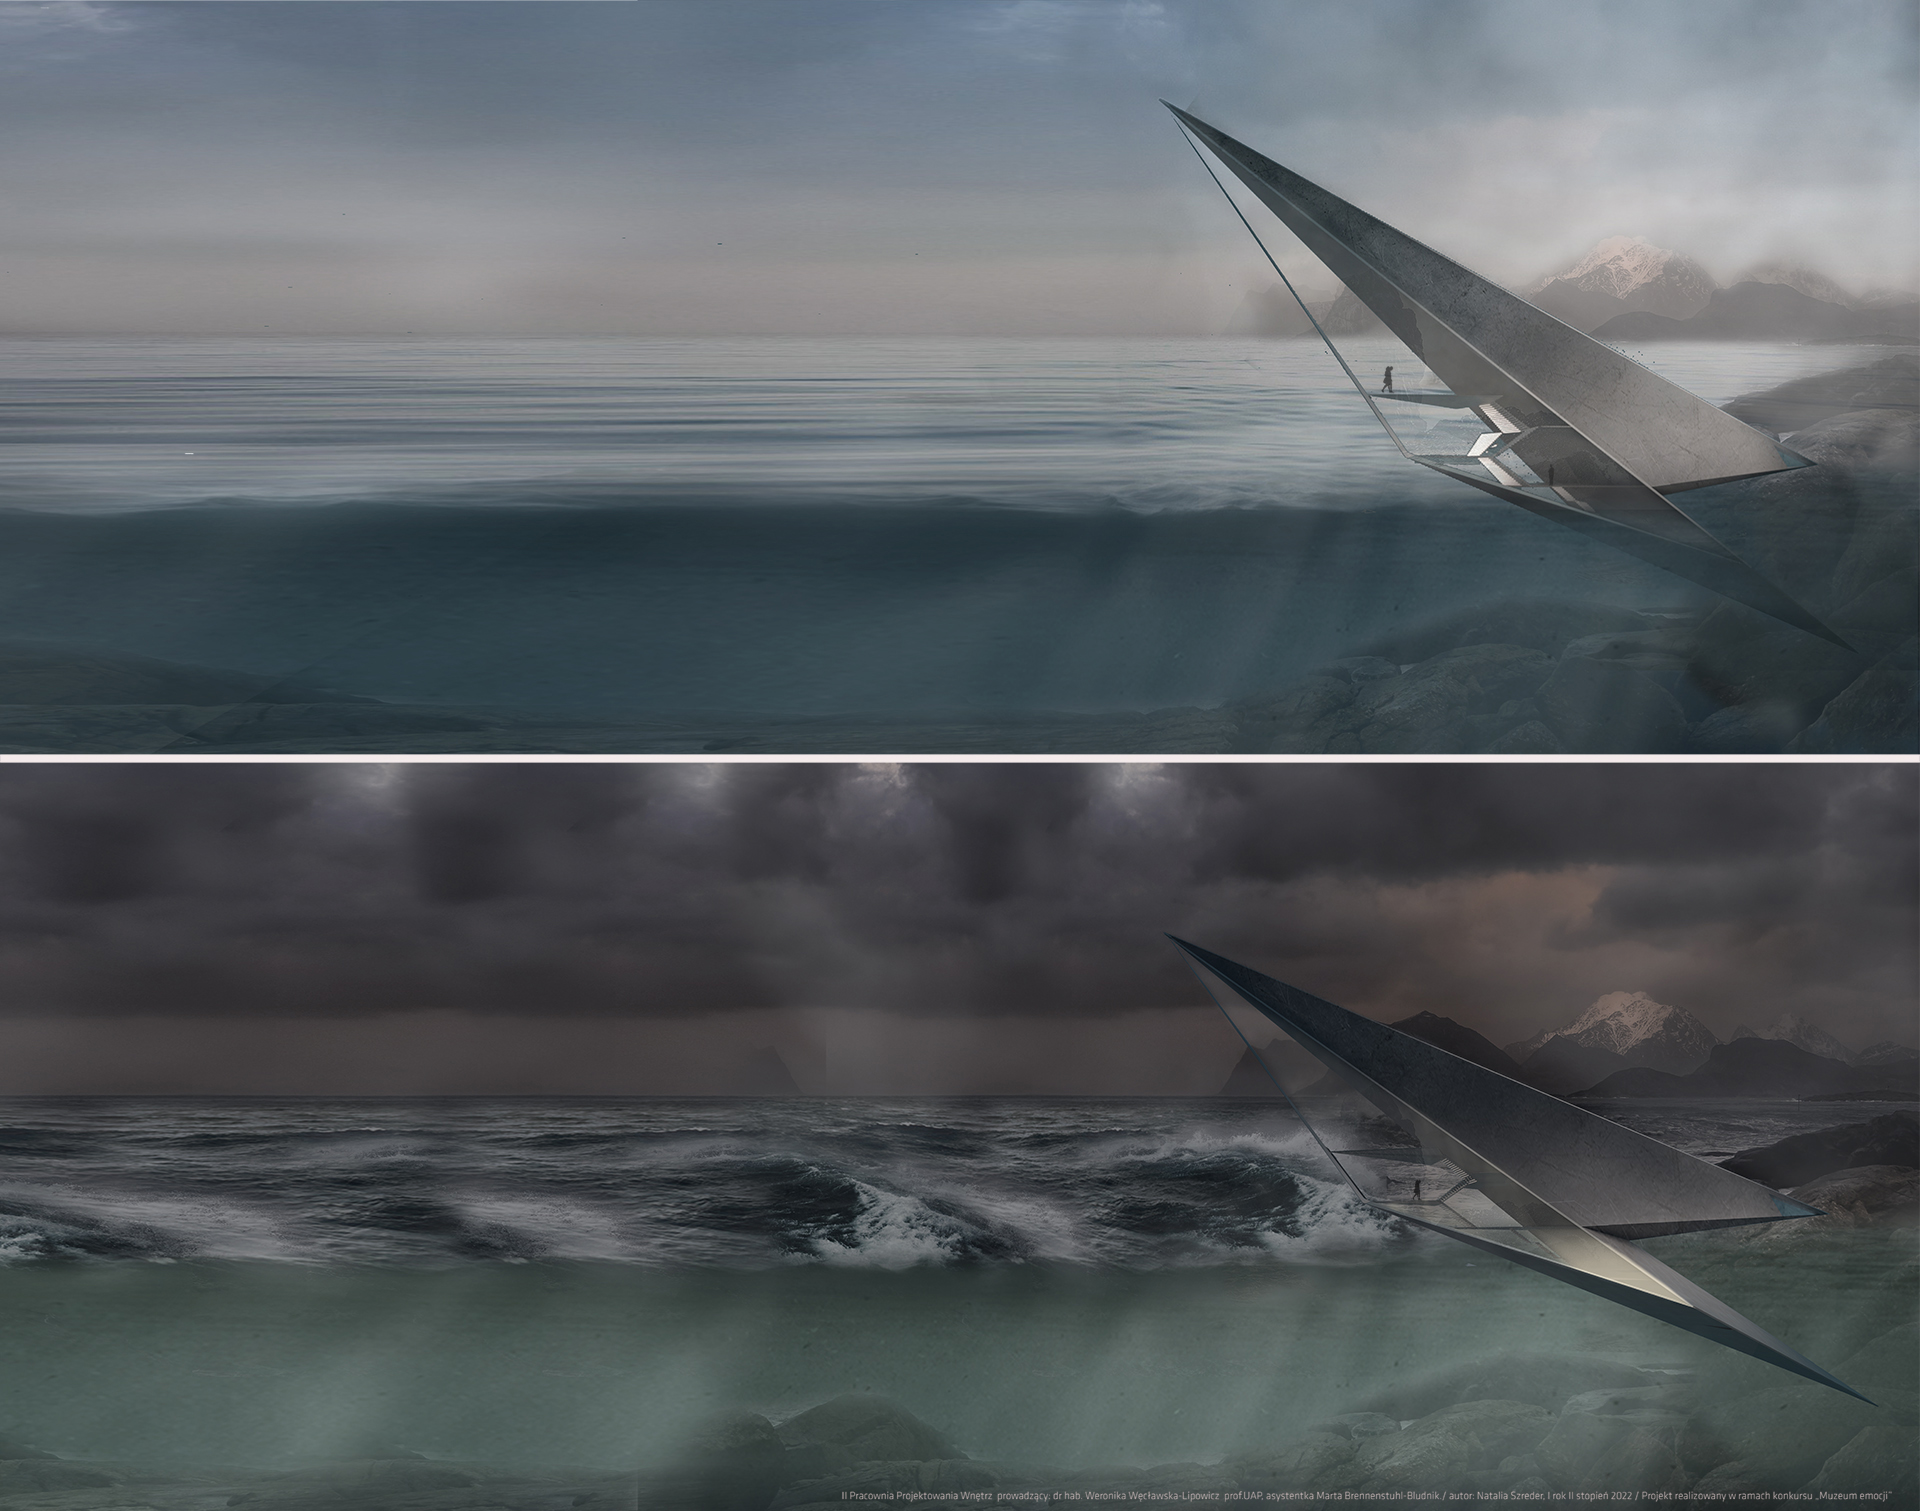 Plansza będąca odpowiedzią na temat konkursu Muzeum Emocji przedstawia bryłę owego muzeum umieszczoną w morzu. Ukazano dwie wizualizacje różnicujące krajobraz pod względem pogody. 